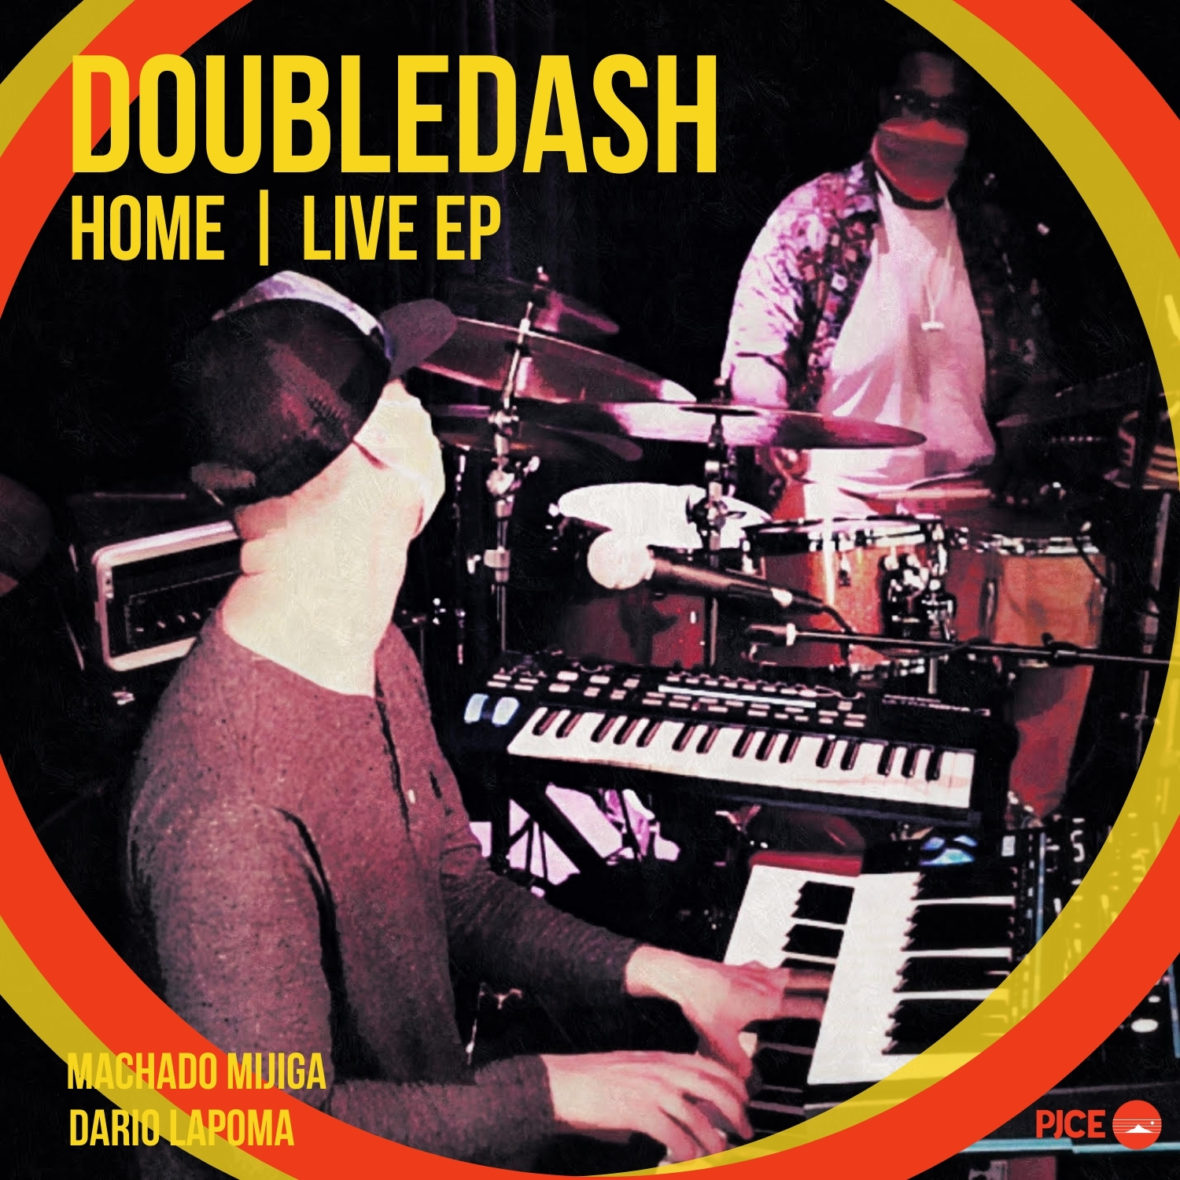 DoubleDash EP album cover art